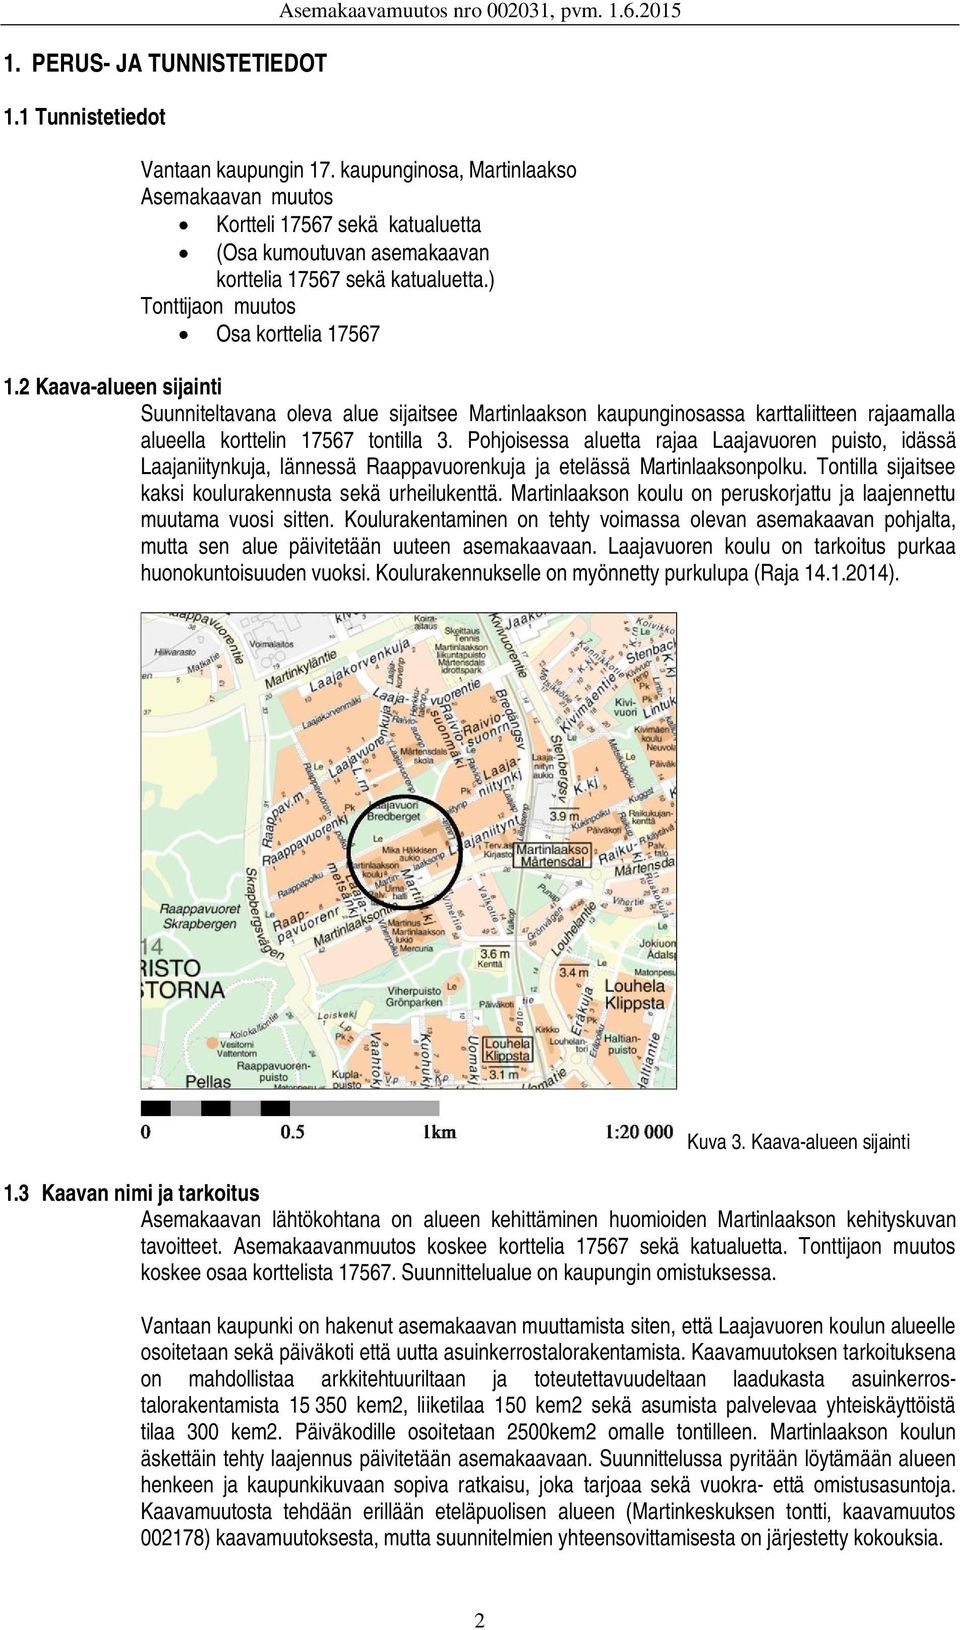 2 Kaava-alueen sijainti Suunniteltavana oleva alue sijaitsee Martinlaakson kaupunginosassa karttaliitteen rajaamalla alueella korttelin 17567 tontilla 3.